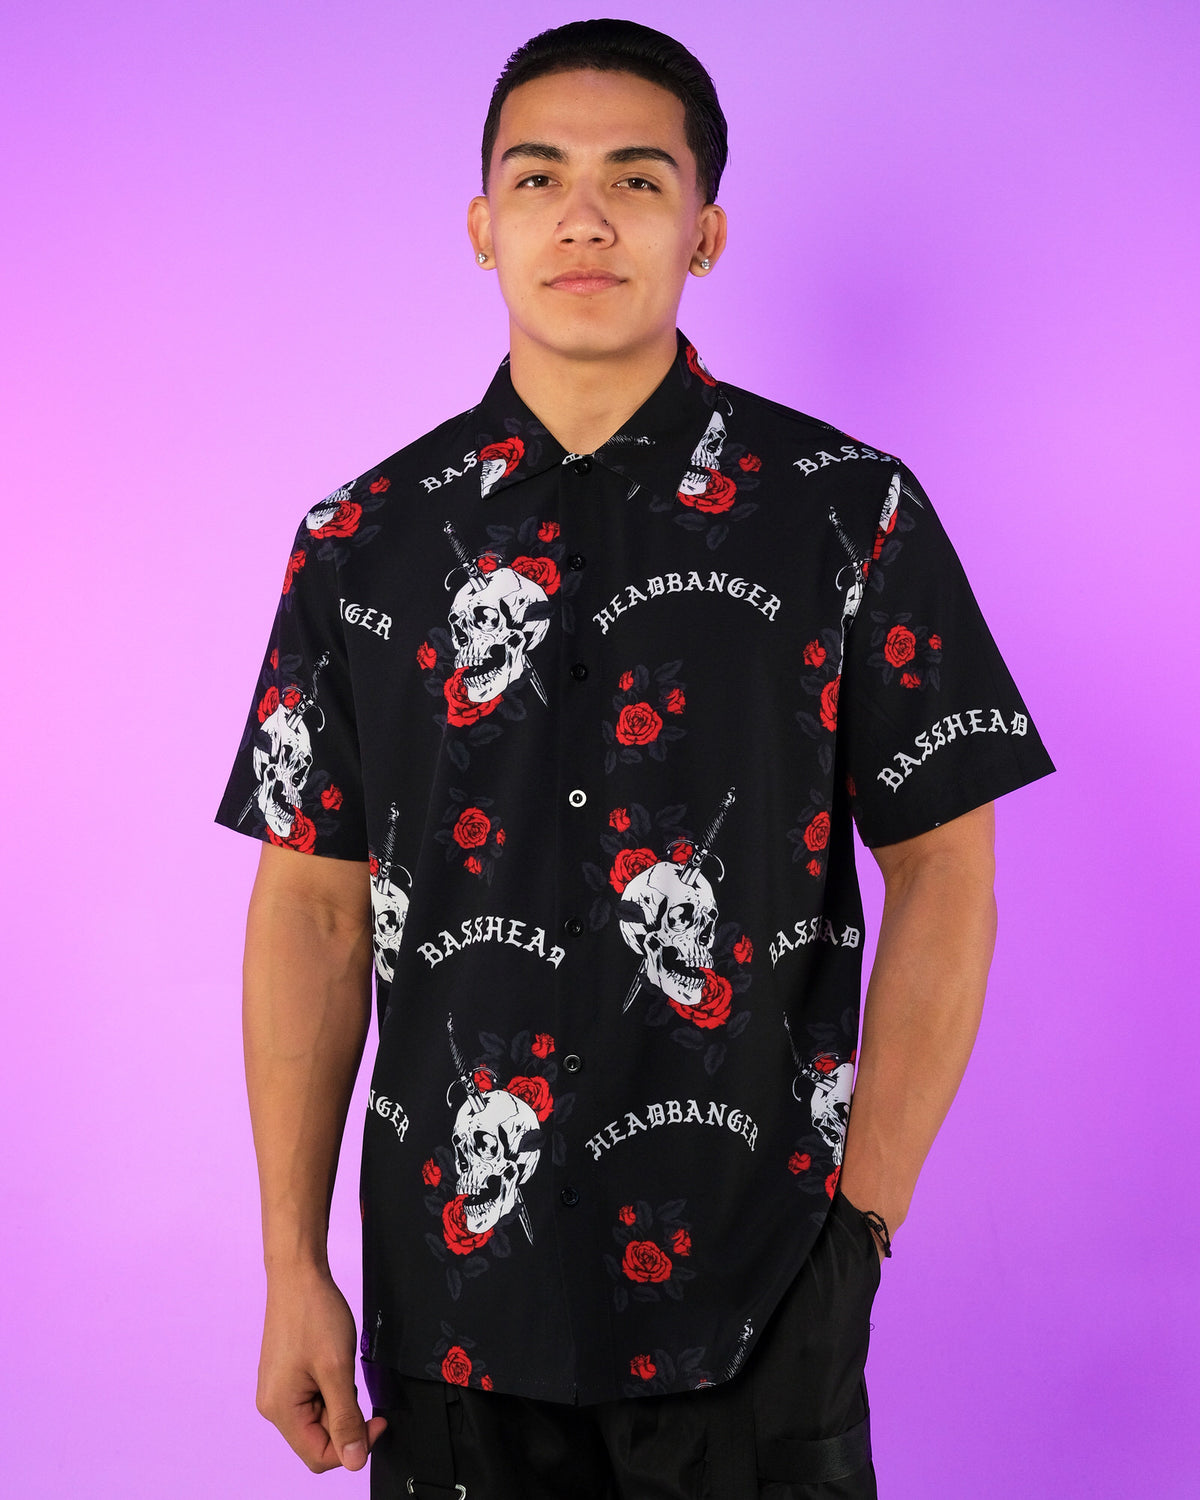 Skull & Rose Basshead Hawaiian Shirt